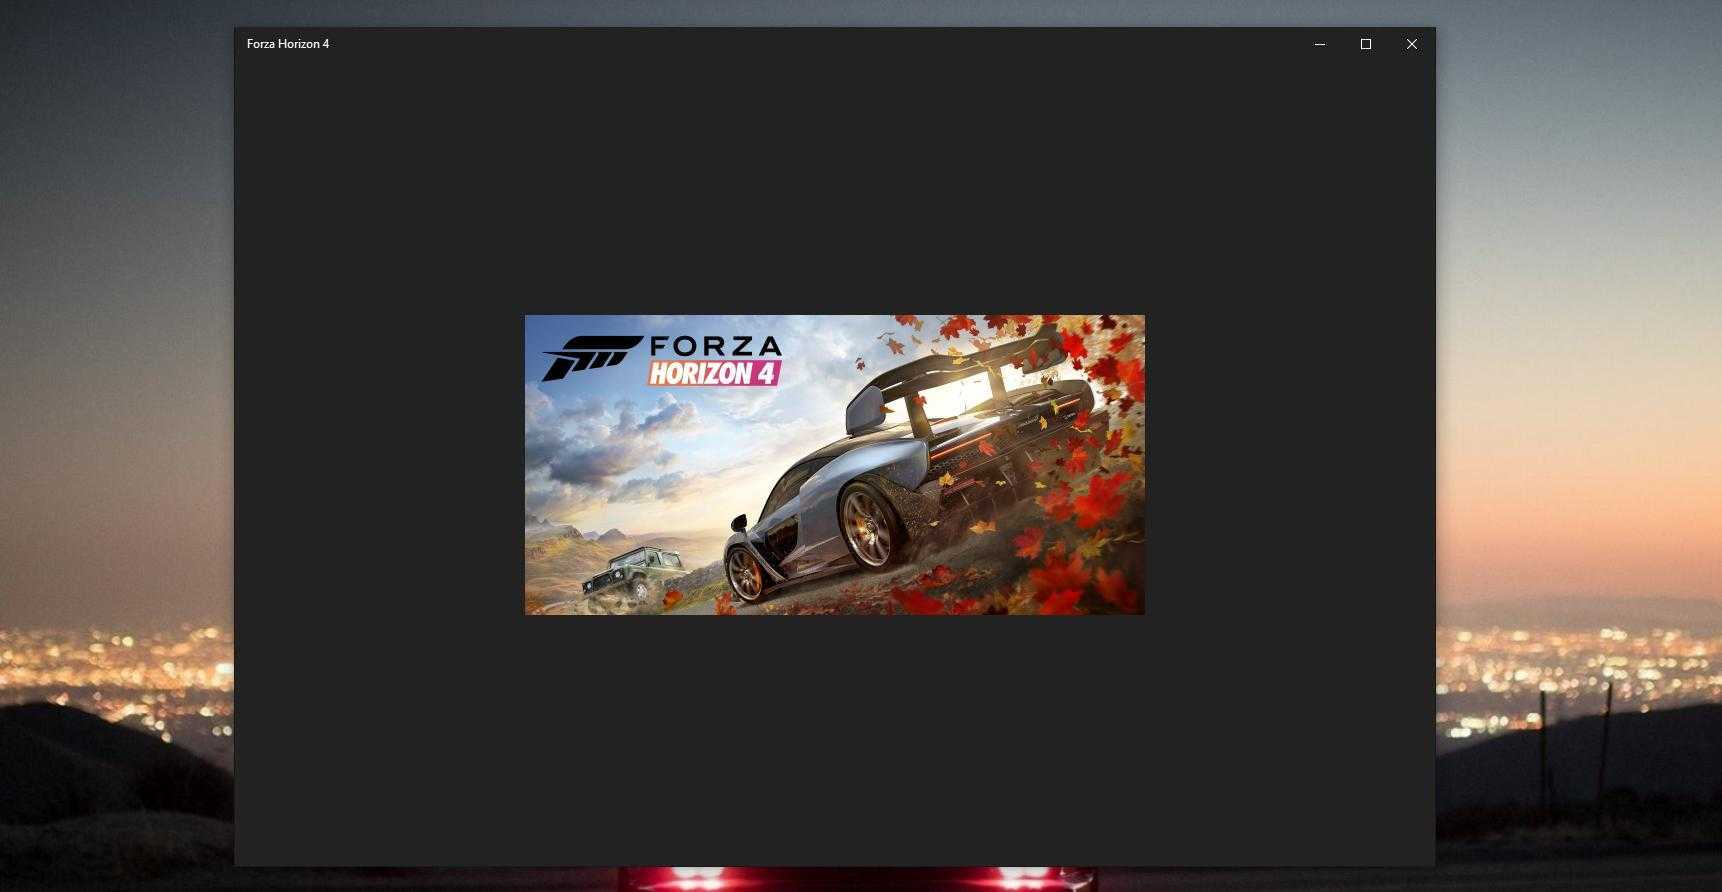 Решить проблему с запуском Forza Horizon 4 в Windows 10 можно с помощью средства устранения неполадок, обновления драйверов и системы, а также другими способами